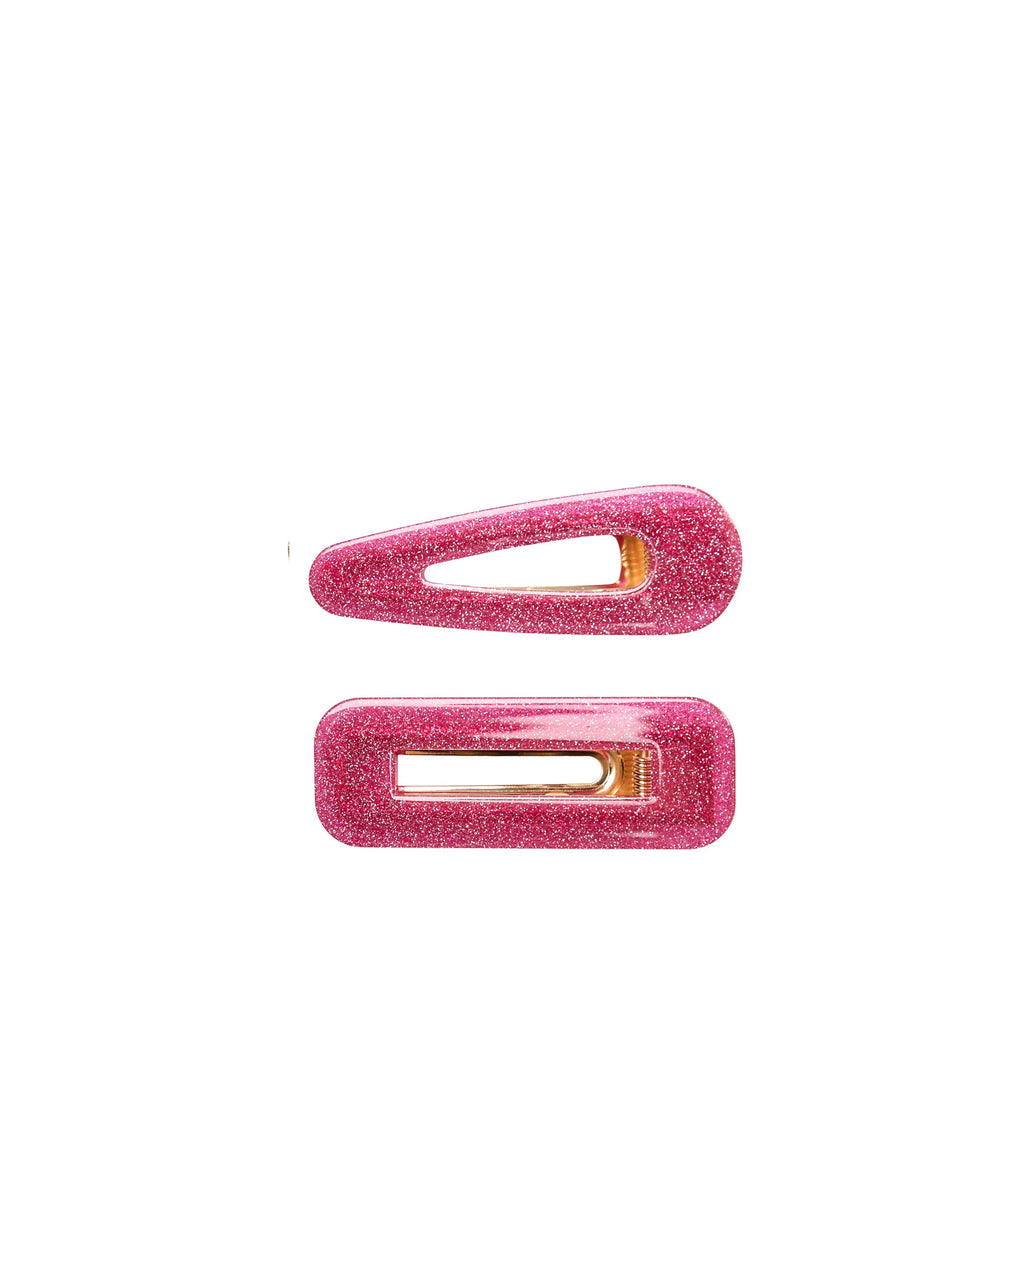 Colorfulpanda Hair Tinsel Kit Heat Resistant Extensions,20 Colors